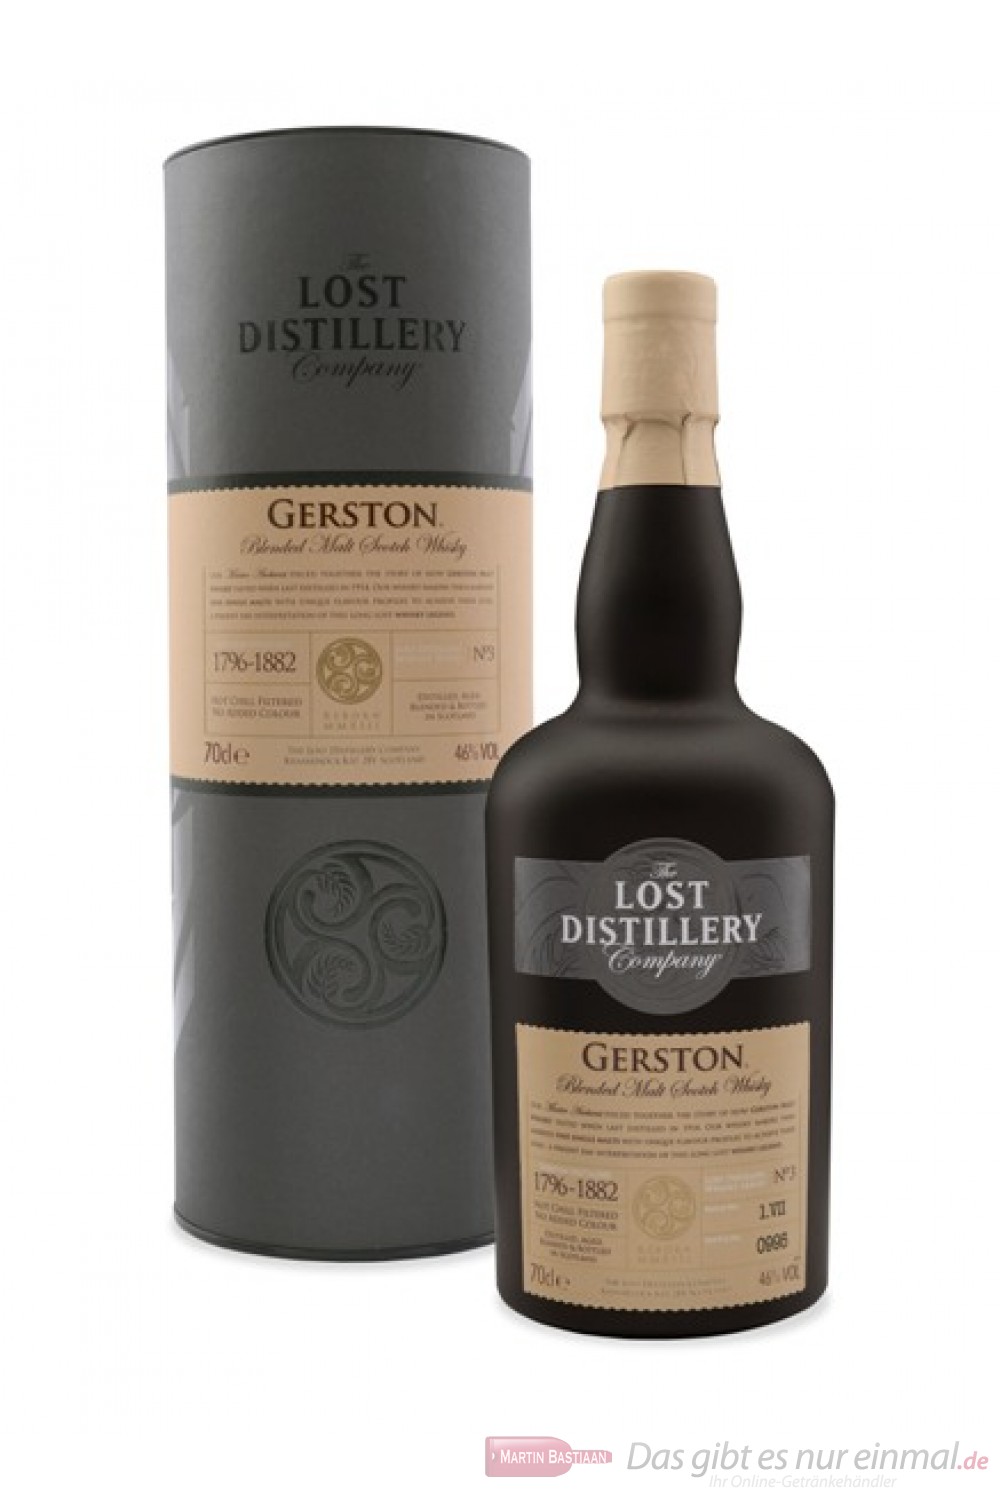 The Lost Distillery Gerston